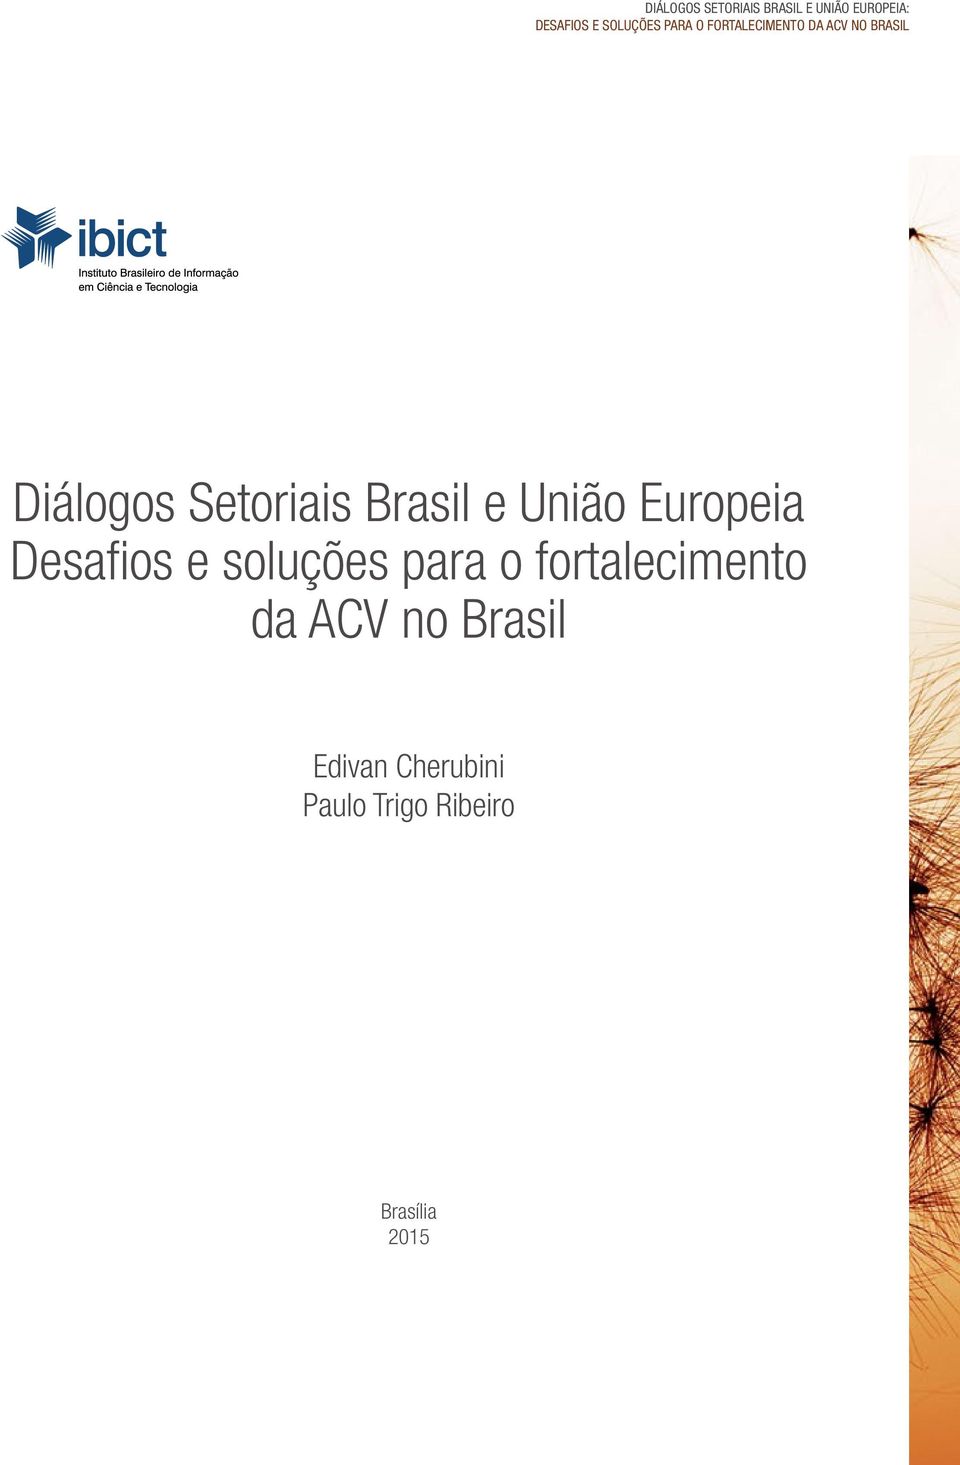 Brasil e União Europeia Desafios e soluções para o